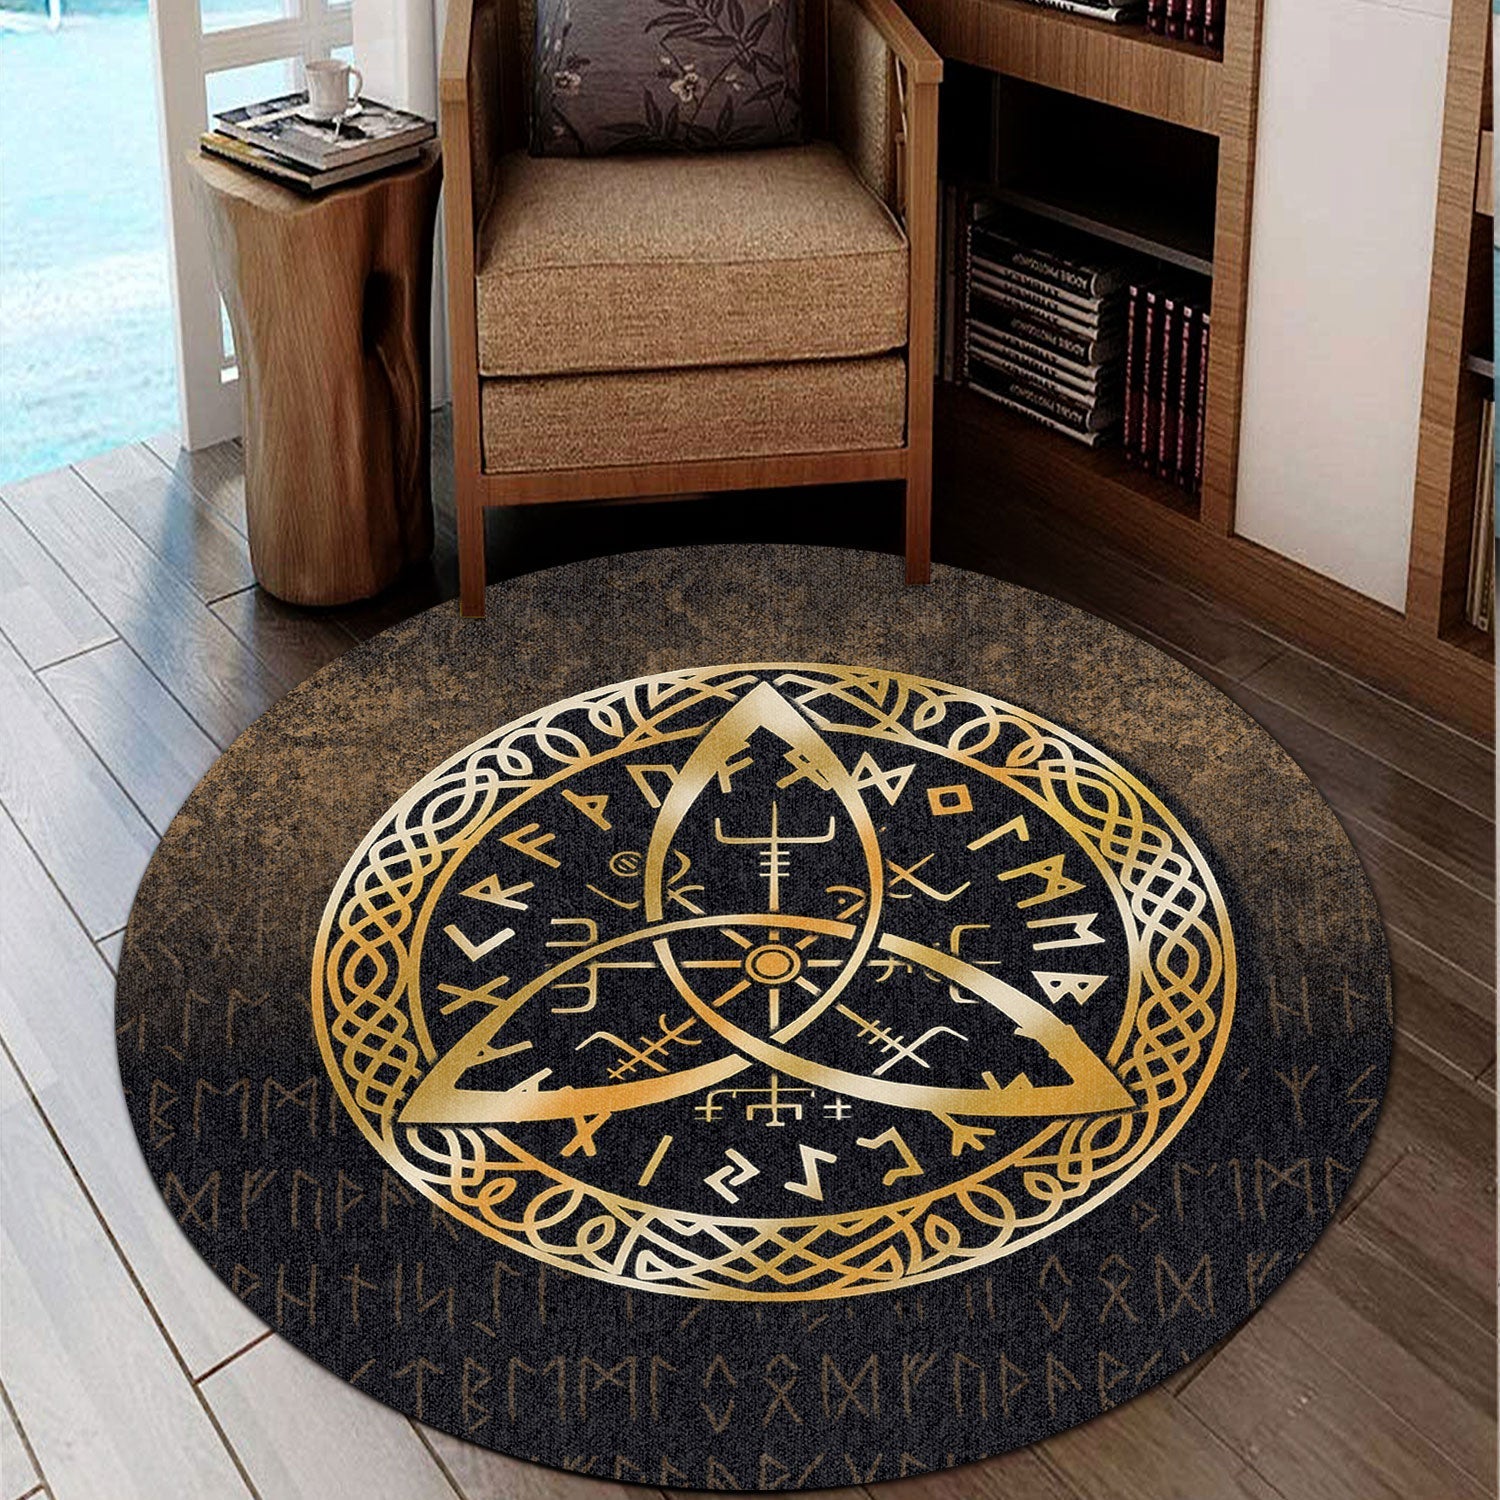 viking-round-carpet-vegvisir-nordic-viking-rune-gold-version-round-carpet